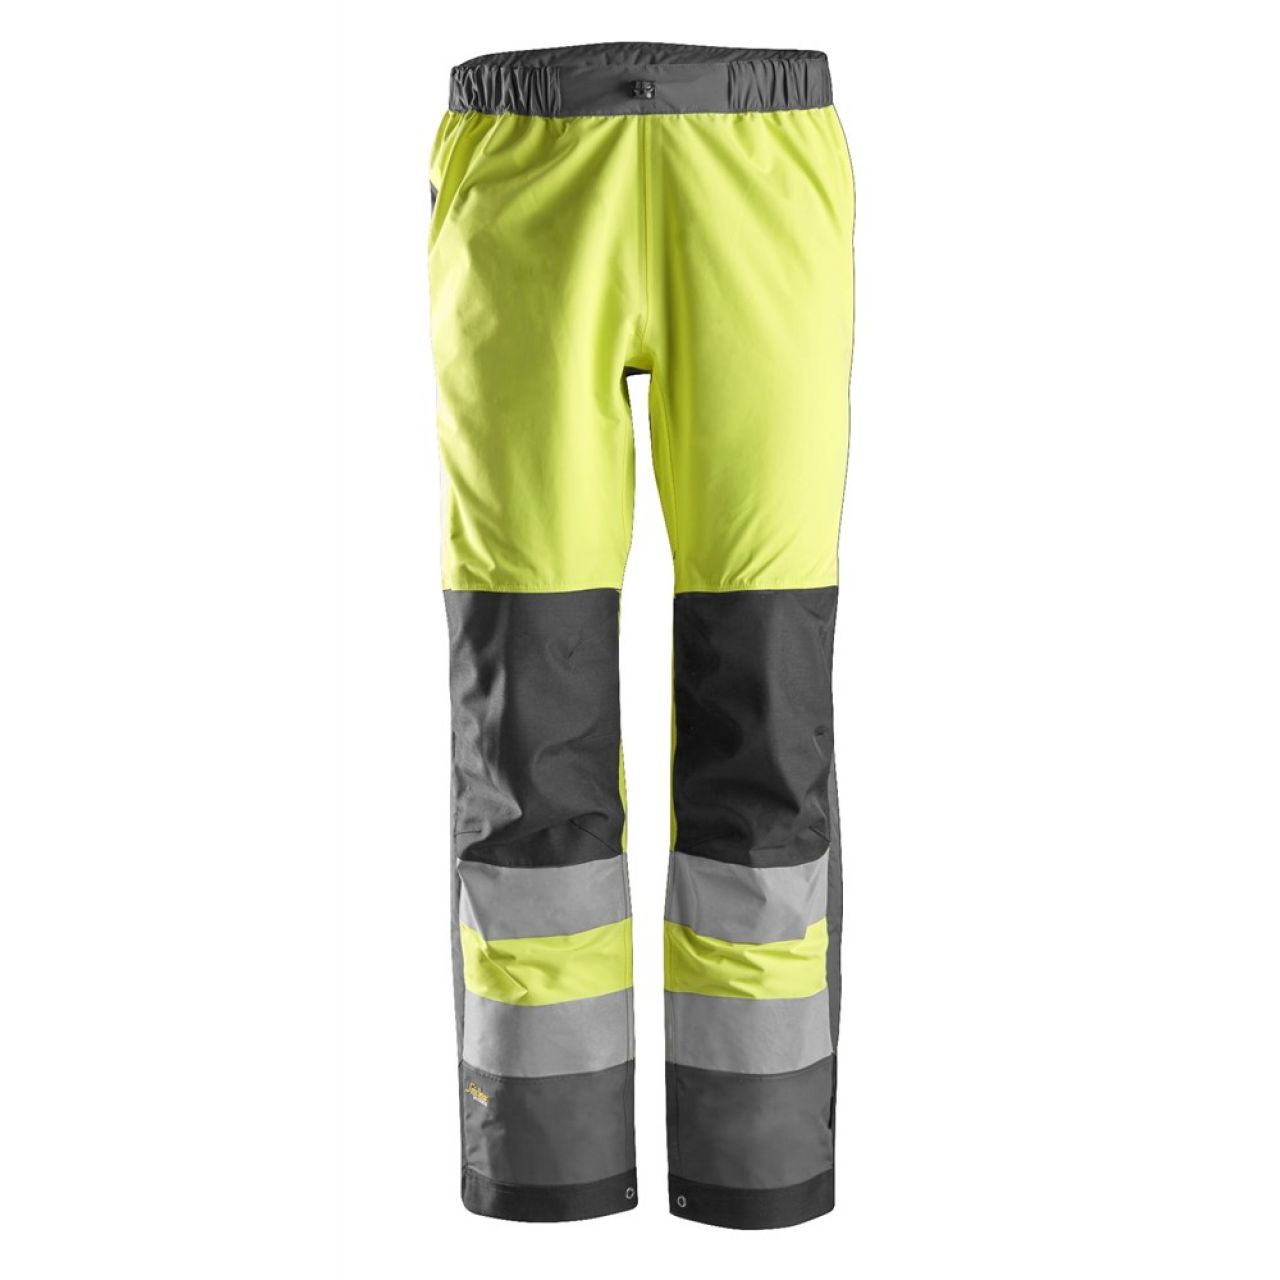 6530 Pantalones largos de trabajo impermeables Waterproof Shell de alta visibilidad clase 2 AllroundWork amarillo-gris acero talla M